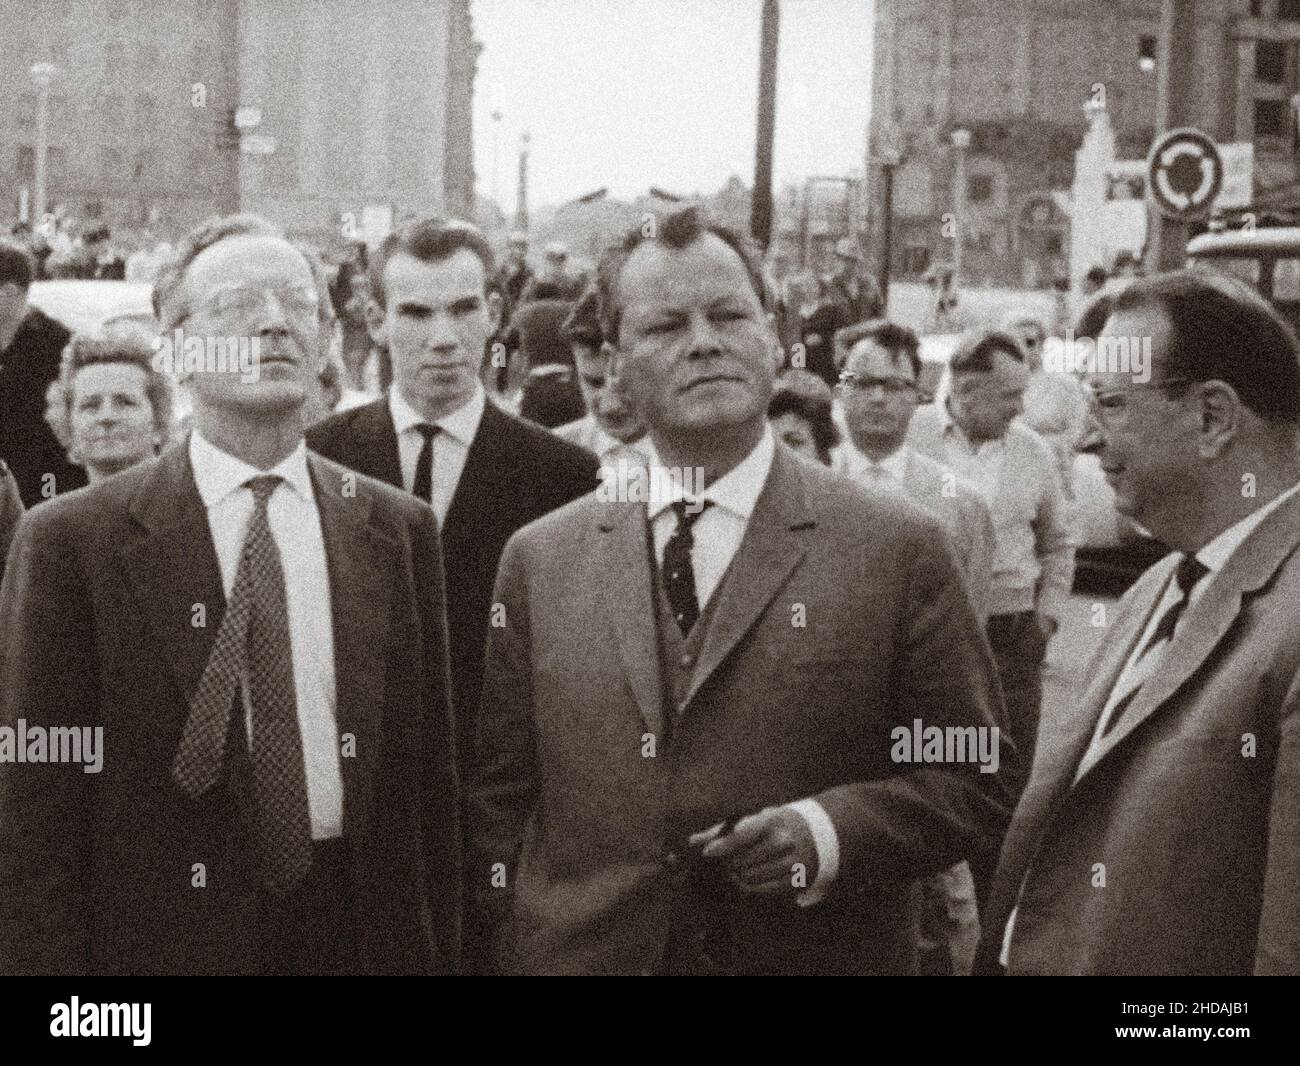 Berliner Krise von 1961. Willy Brandt Regierender Bürgermeister von West-Berlin. Die Serie der archivel-Fotos zeigt das Reiseverbot zwischen Ost und West im August 1961 Stockfoto